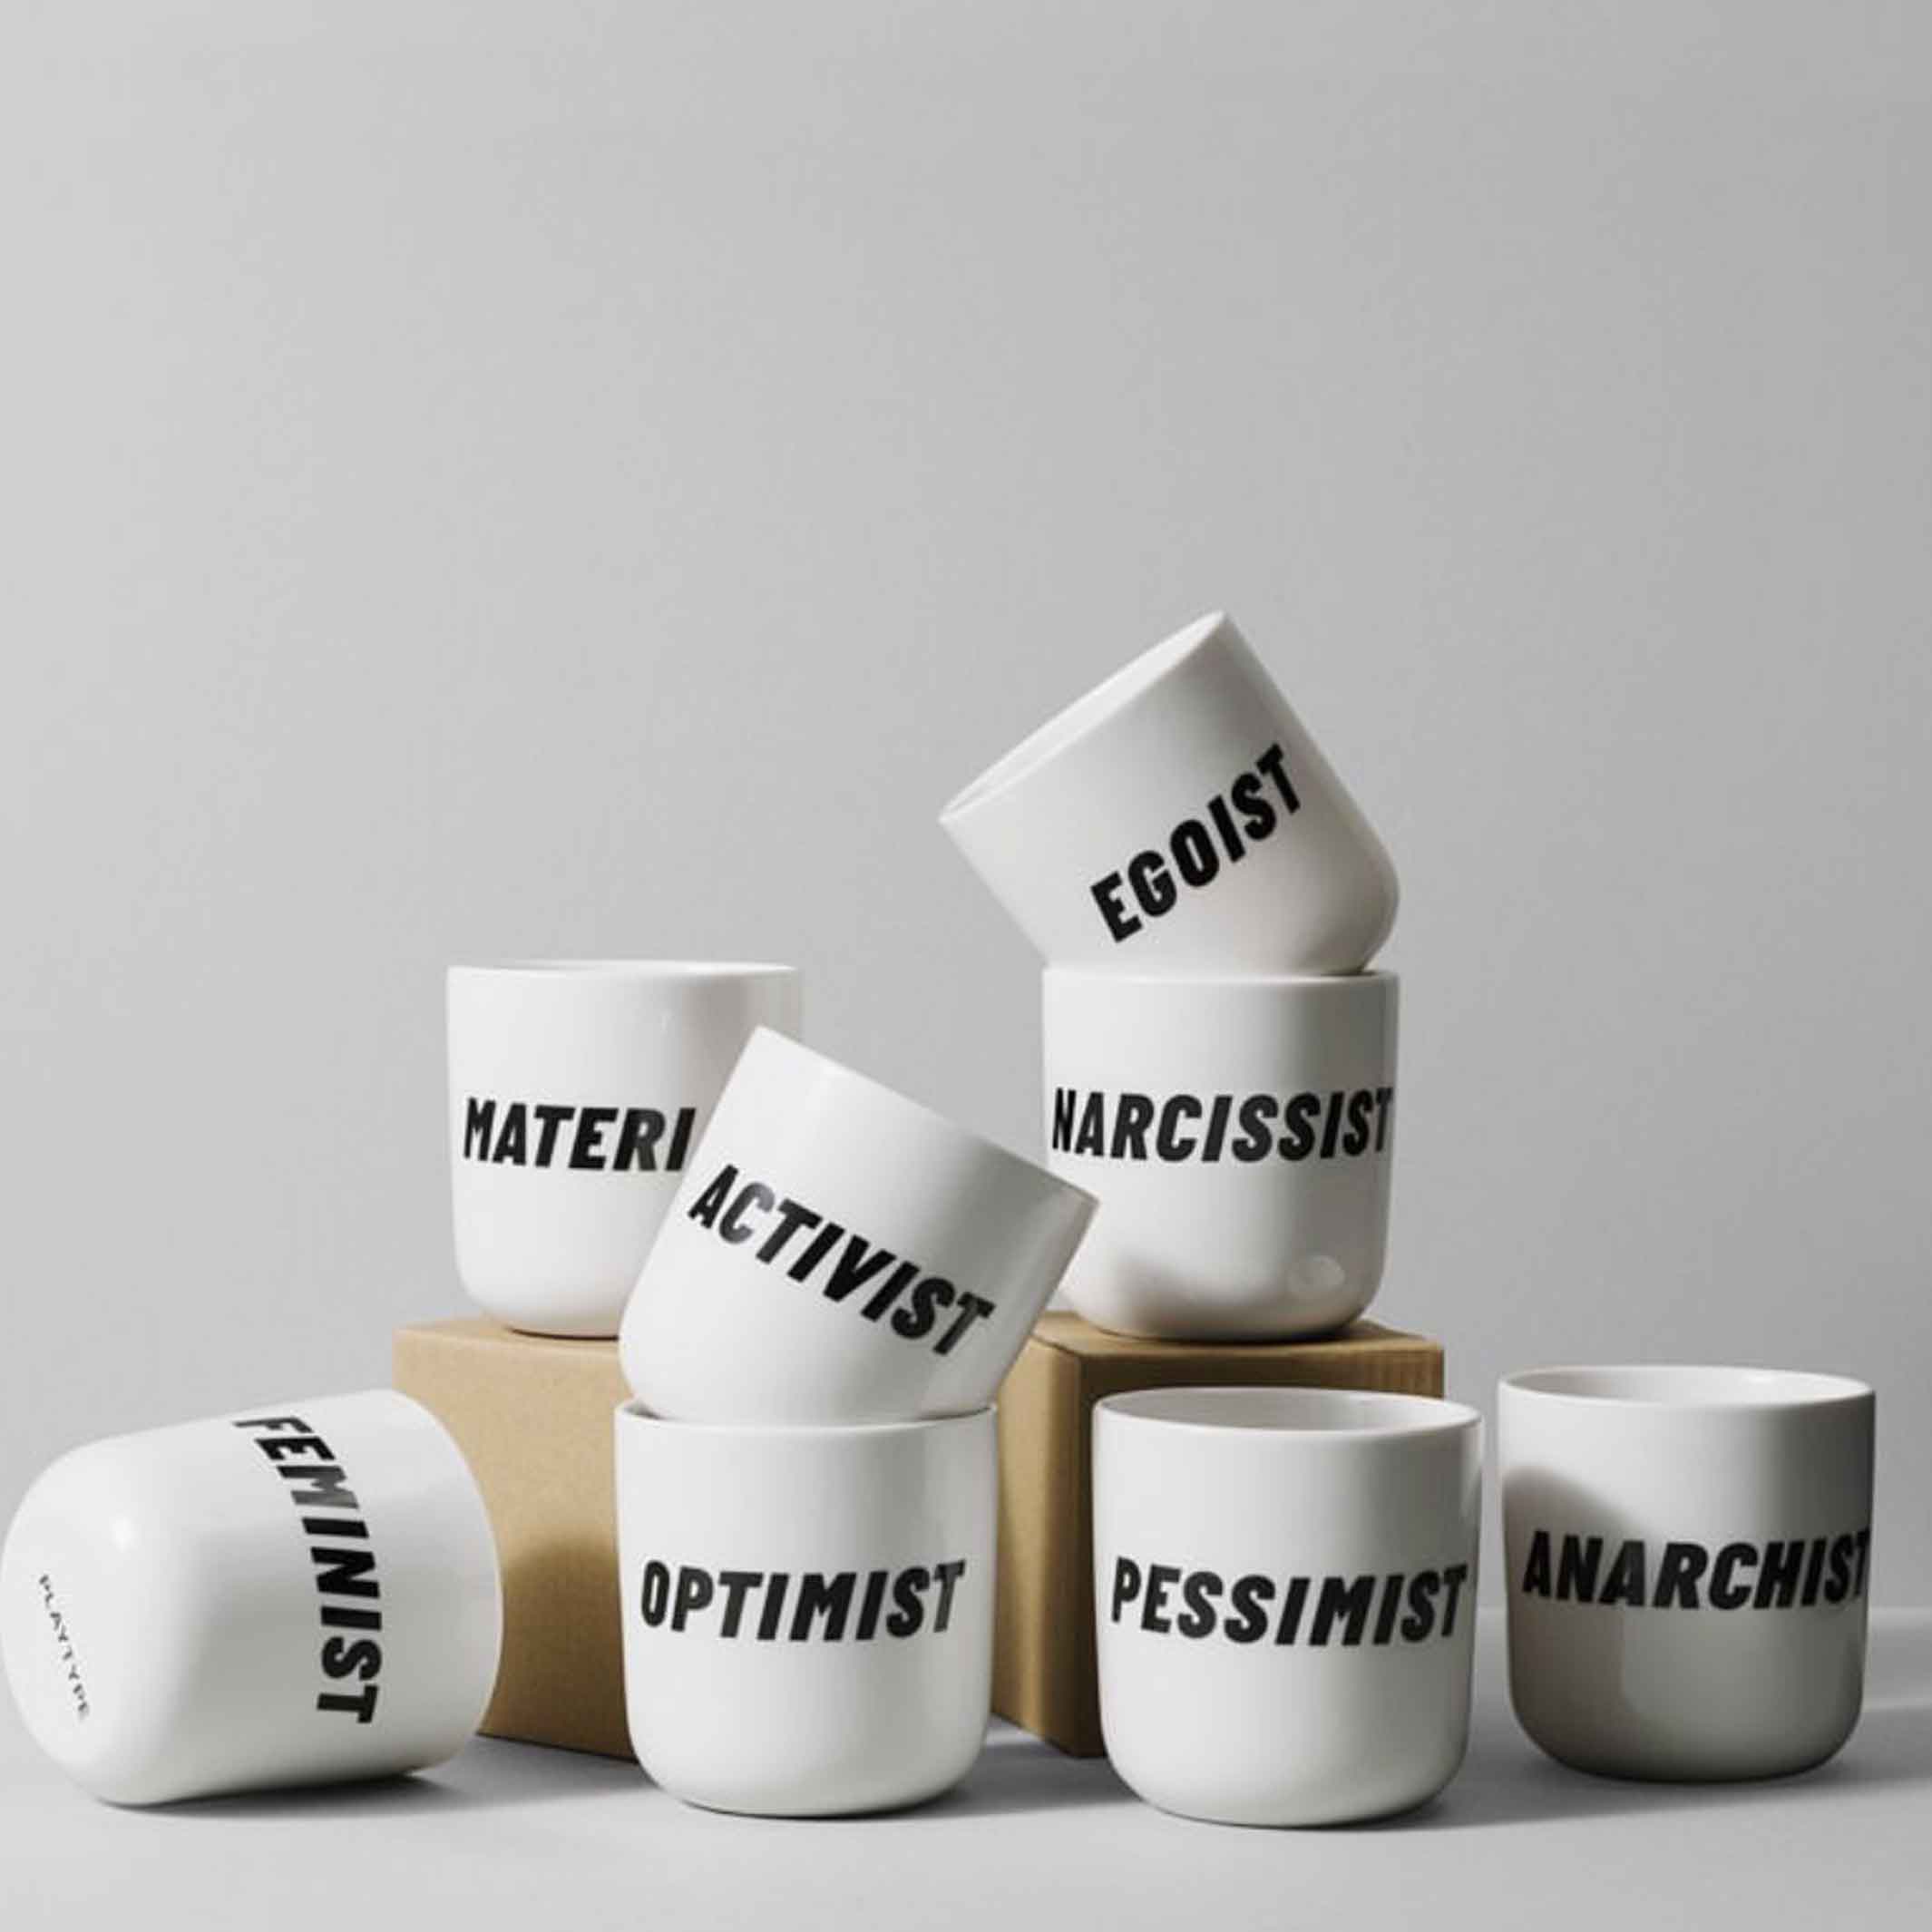 EXTREMIST | white coffee & tea MUG with black typo | Attitude Collection | PLTY